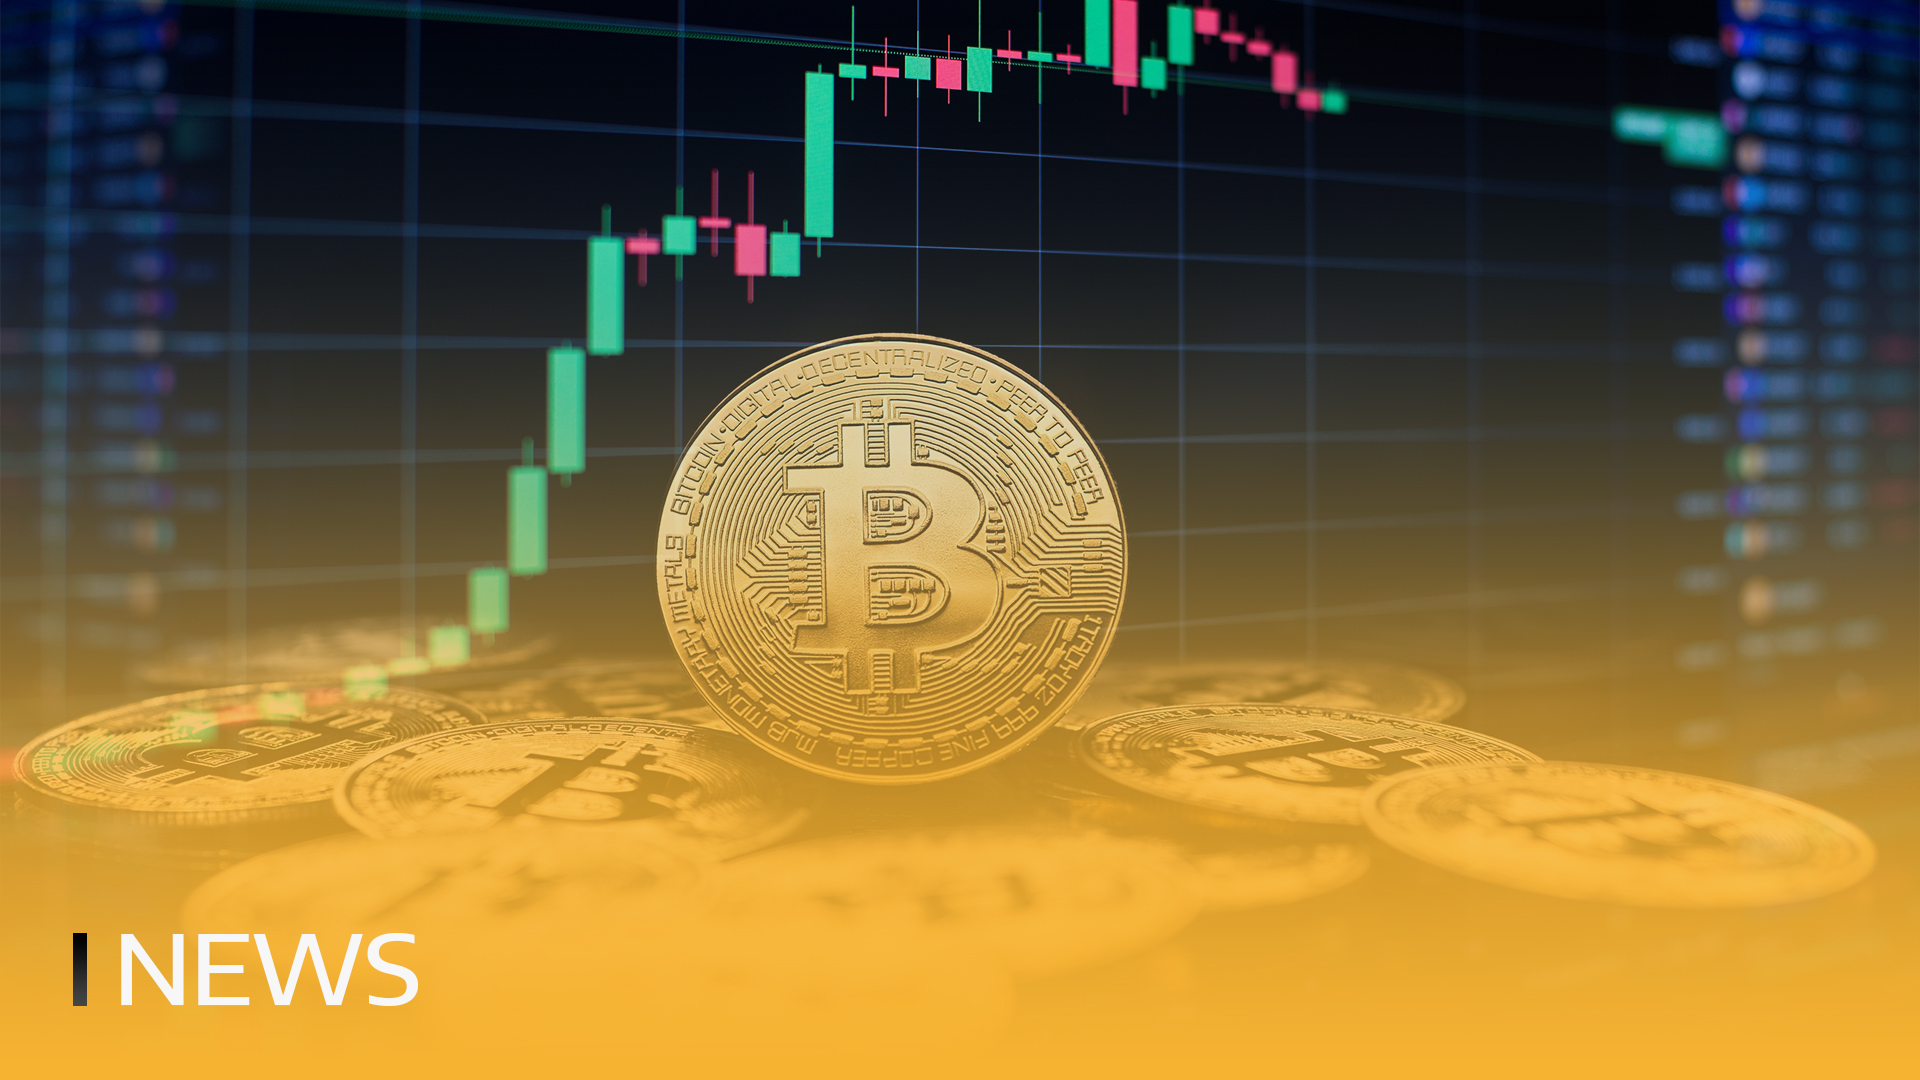 Bitcoin Reclaims $70,000 Cena jako nabídka zmenšuje